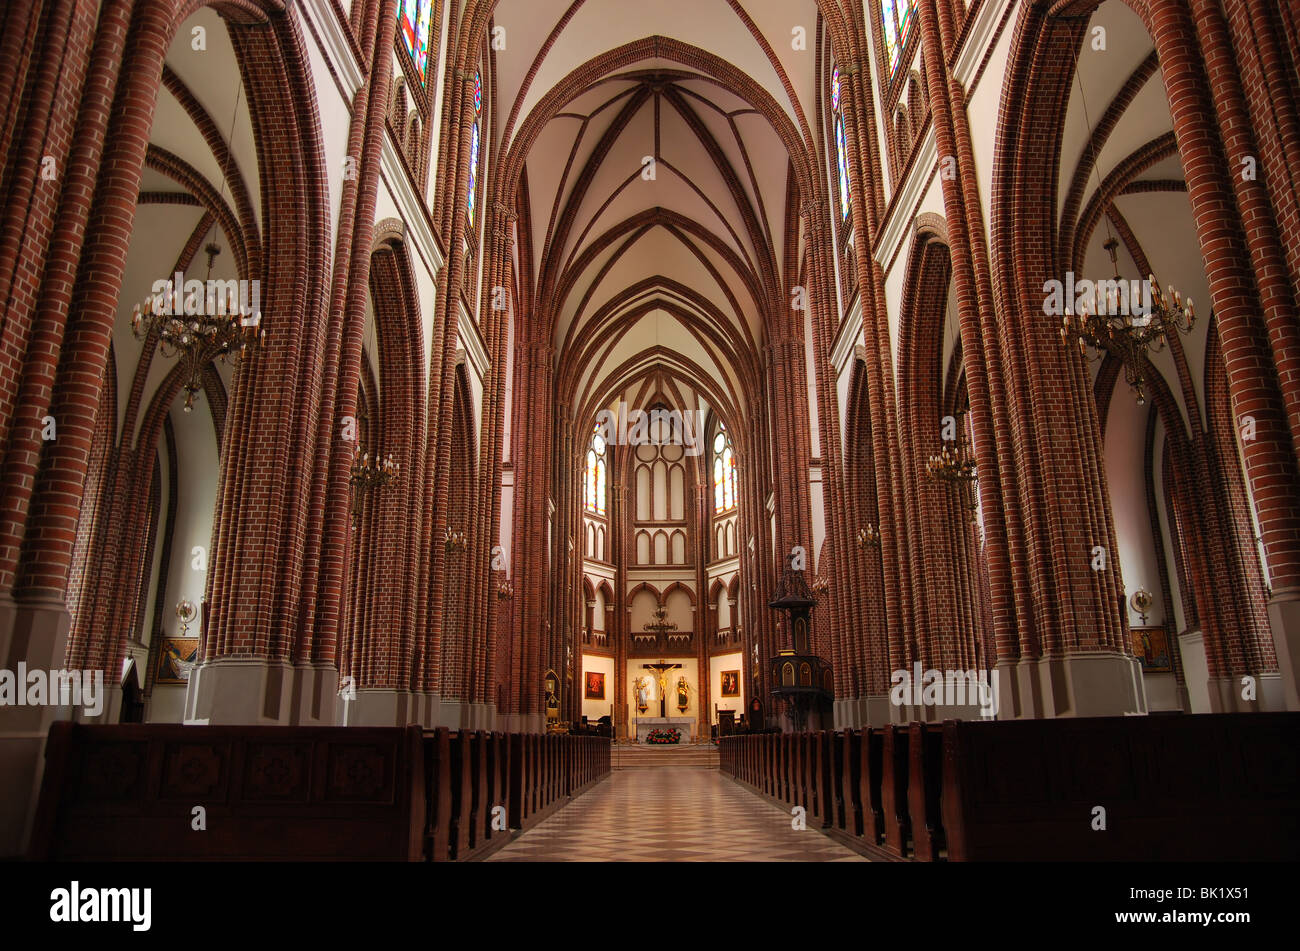 Polish catholic cathedral inside interior (horizontal) Stock Photo